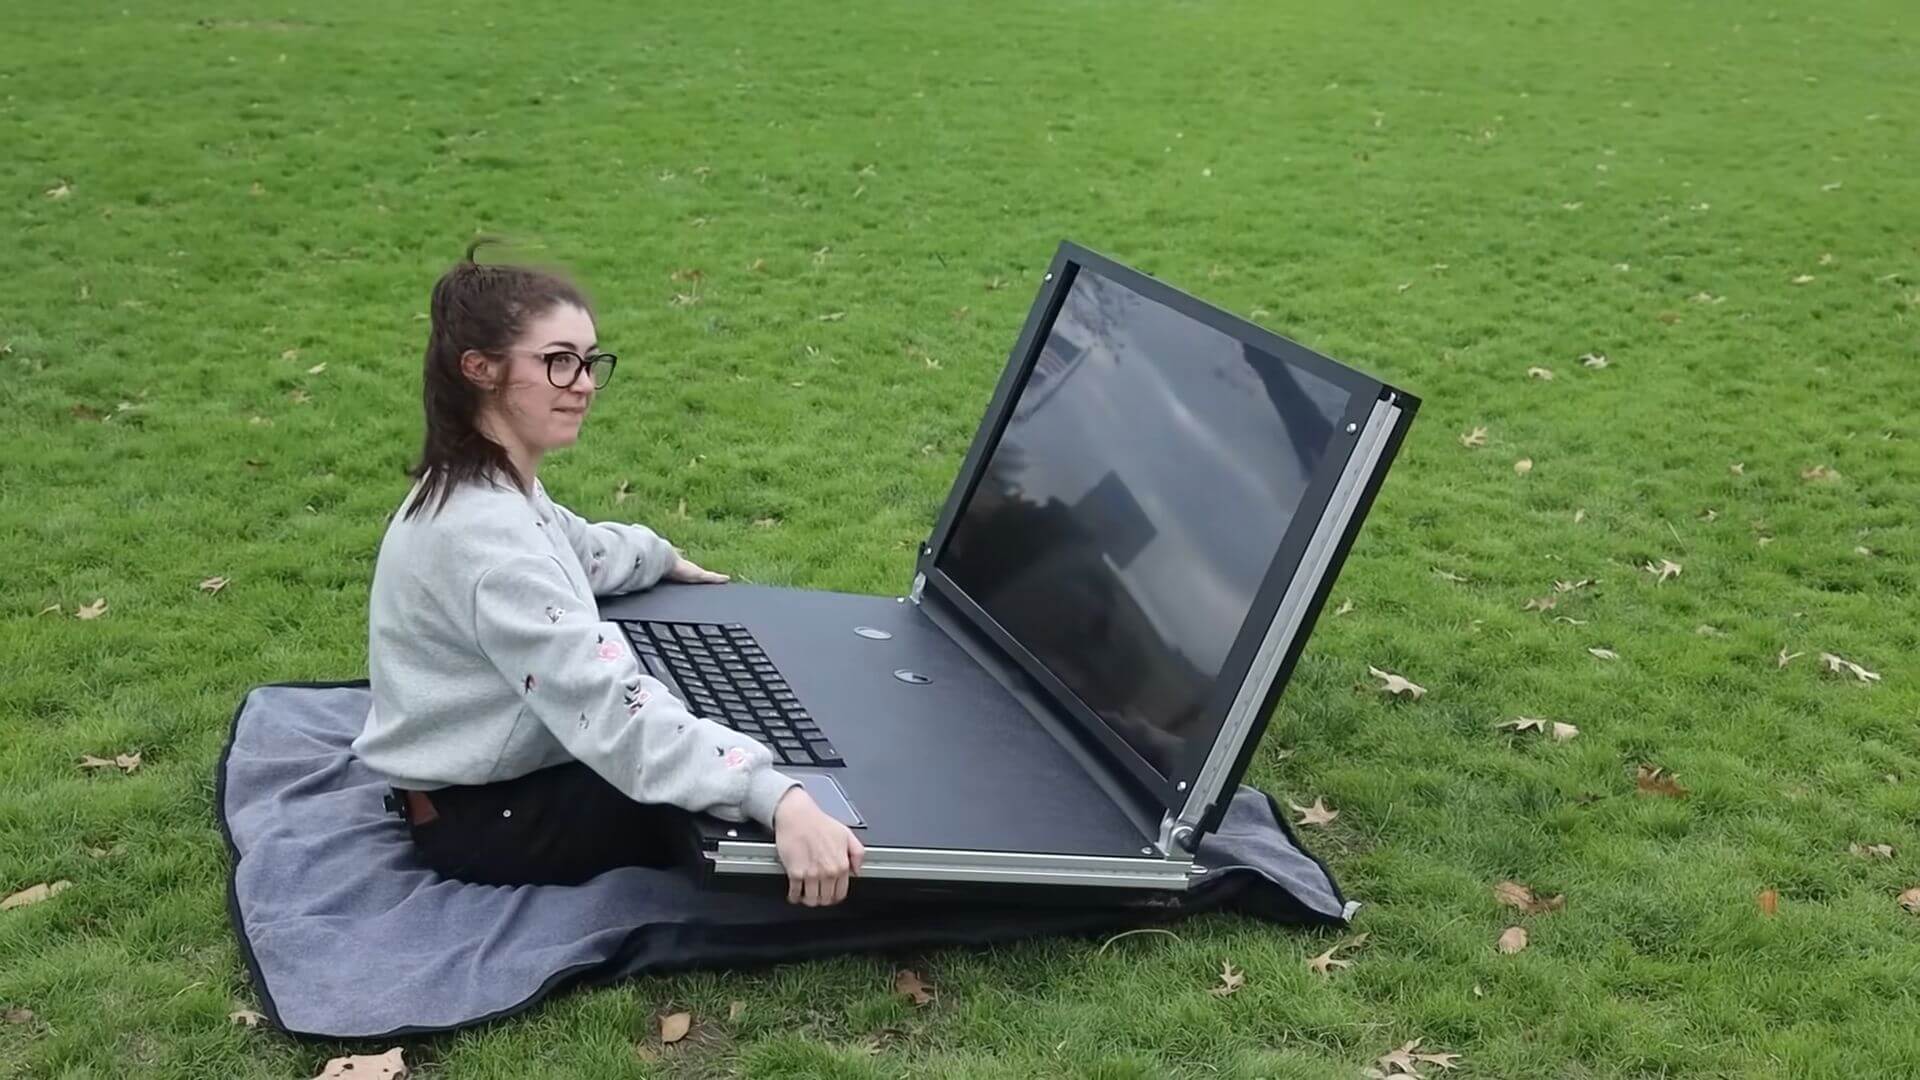 Ютуберы создали игровой ноутбук с 43-дюймовым дисплеем и весом 45 кг